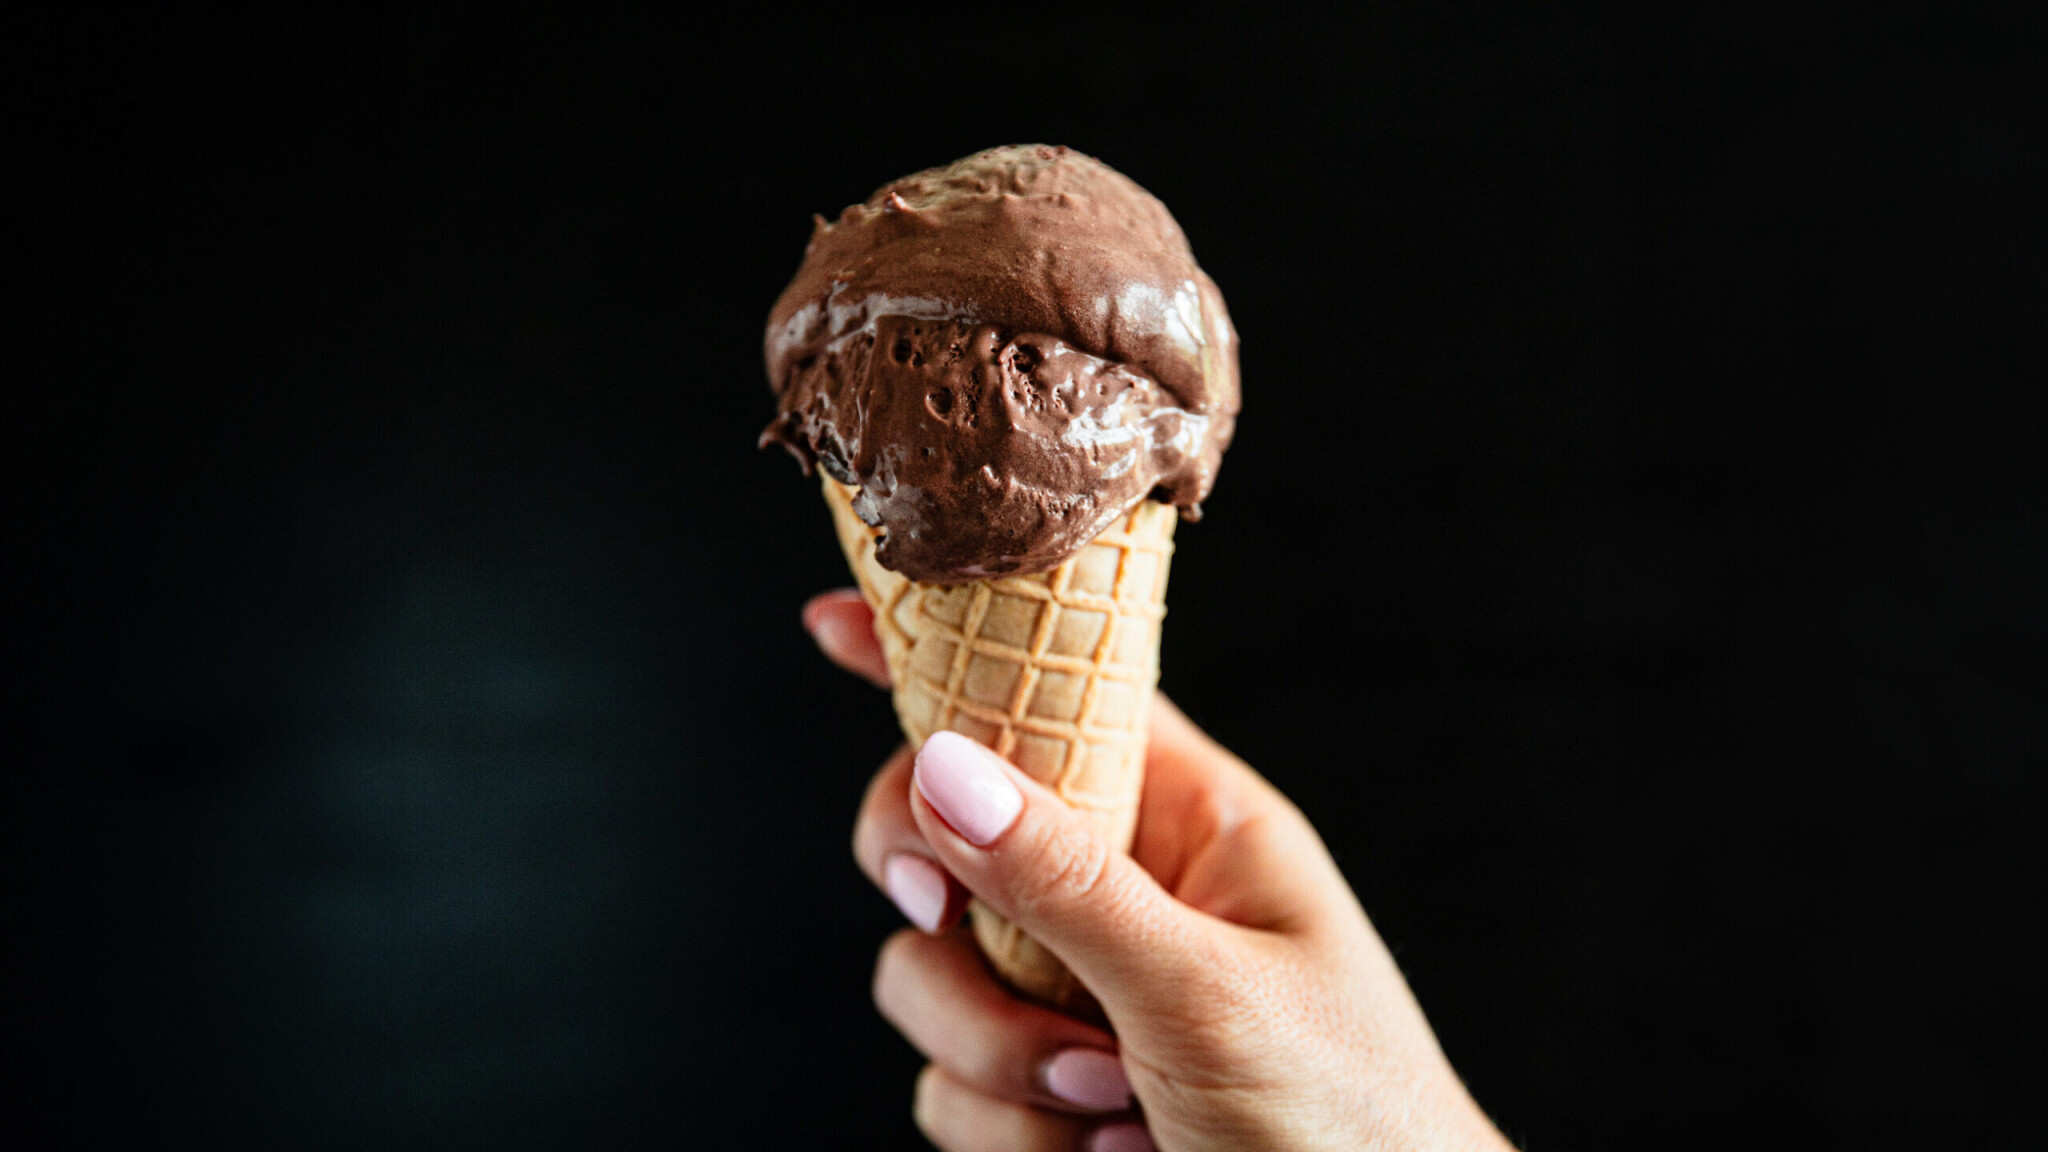 Ďábelsky čokoládová & božsky jednoduchá. Perfektní zmrzlina bez zmrzlinovače